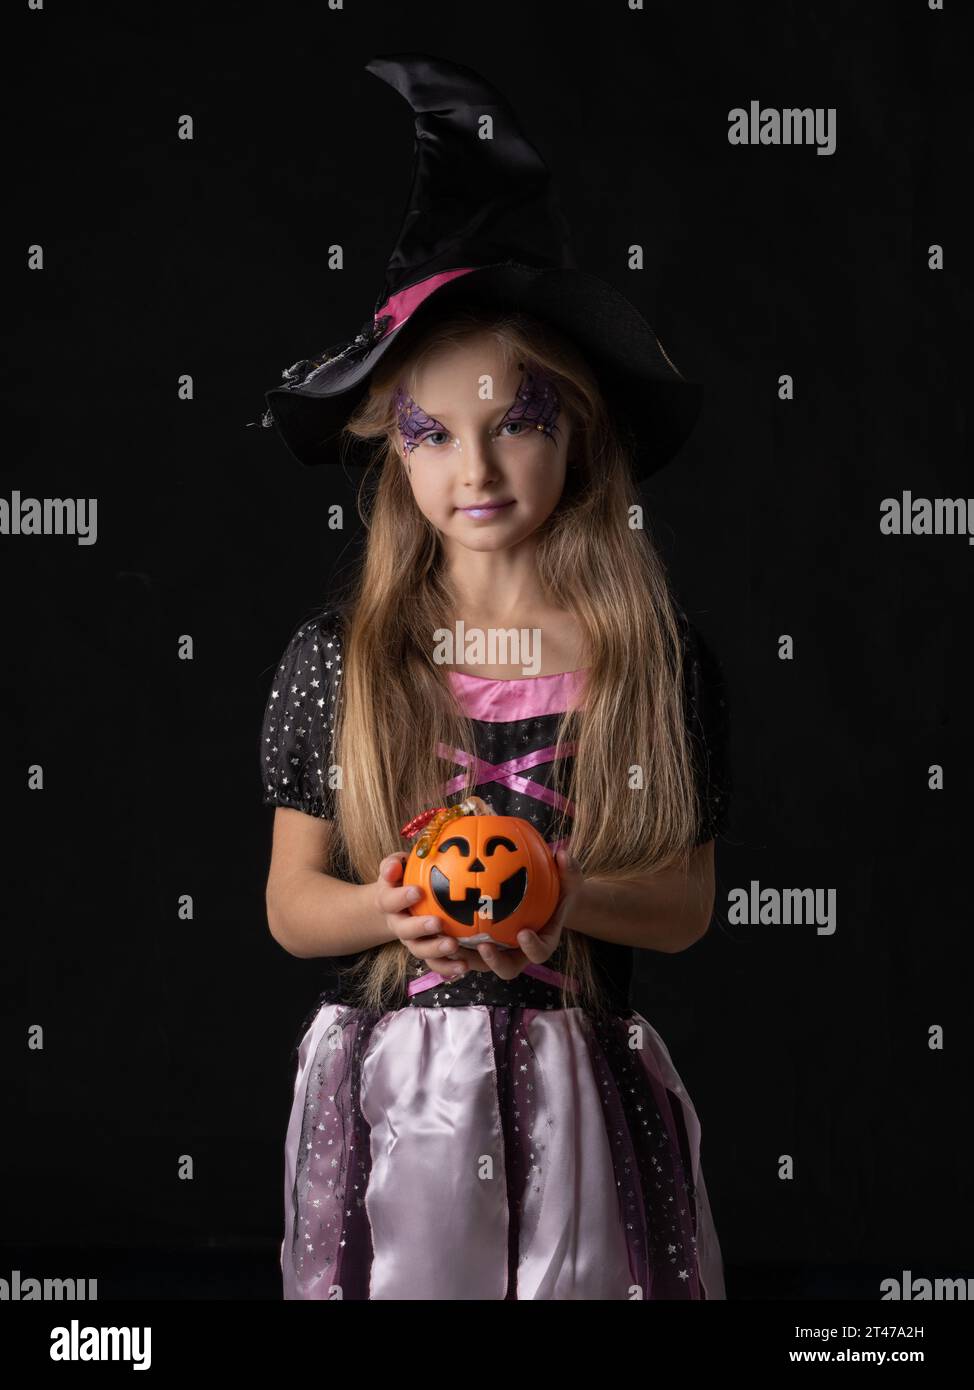 Cute ragazza strega di Halloween in costume fantasy che tiene il secchio di zucca con vermi caramelle, isolato su sfondo nero Foto Stock